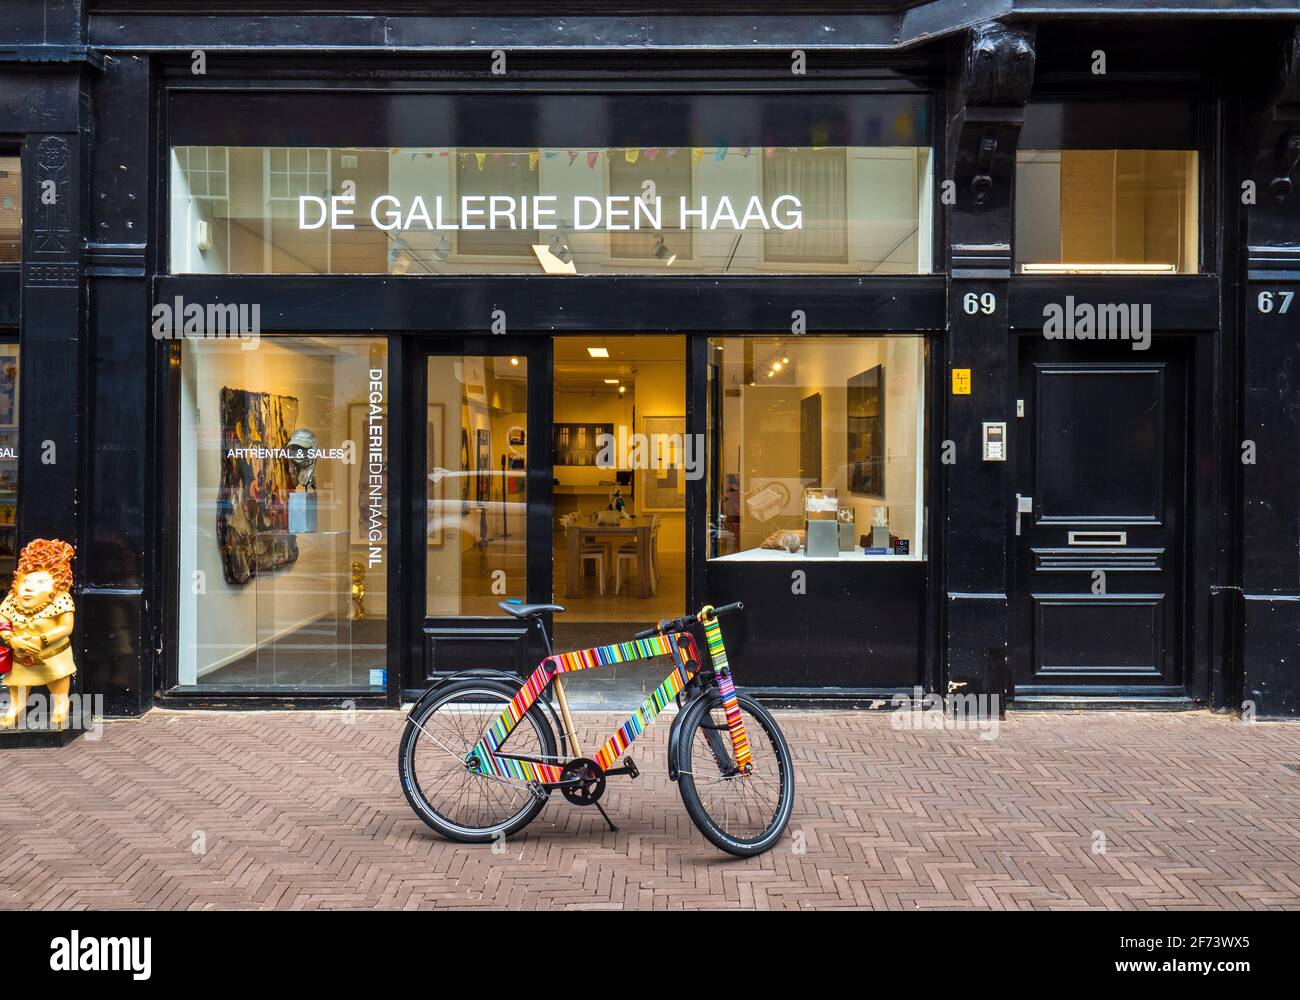 De Galerie Den Haag auf der Noordeinde 69-71 in Den Haag oder Den Haag, NL. Kommerzielle Kunstgalerie & Geschäft, spezialisiert auf moderne zeitgenössische Kunst Stockfoto